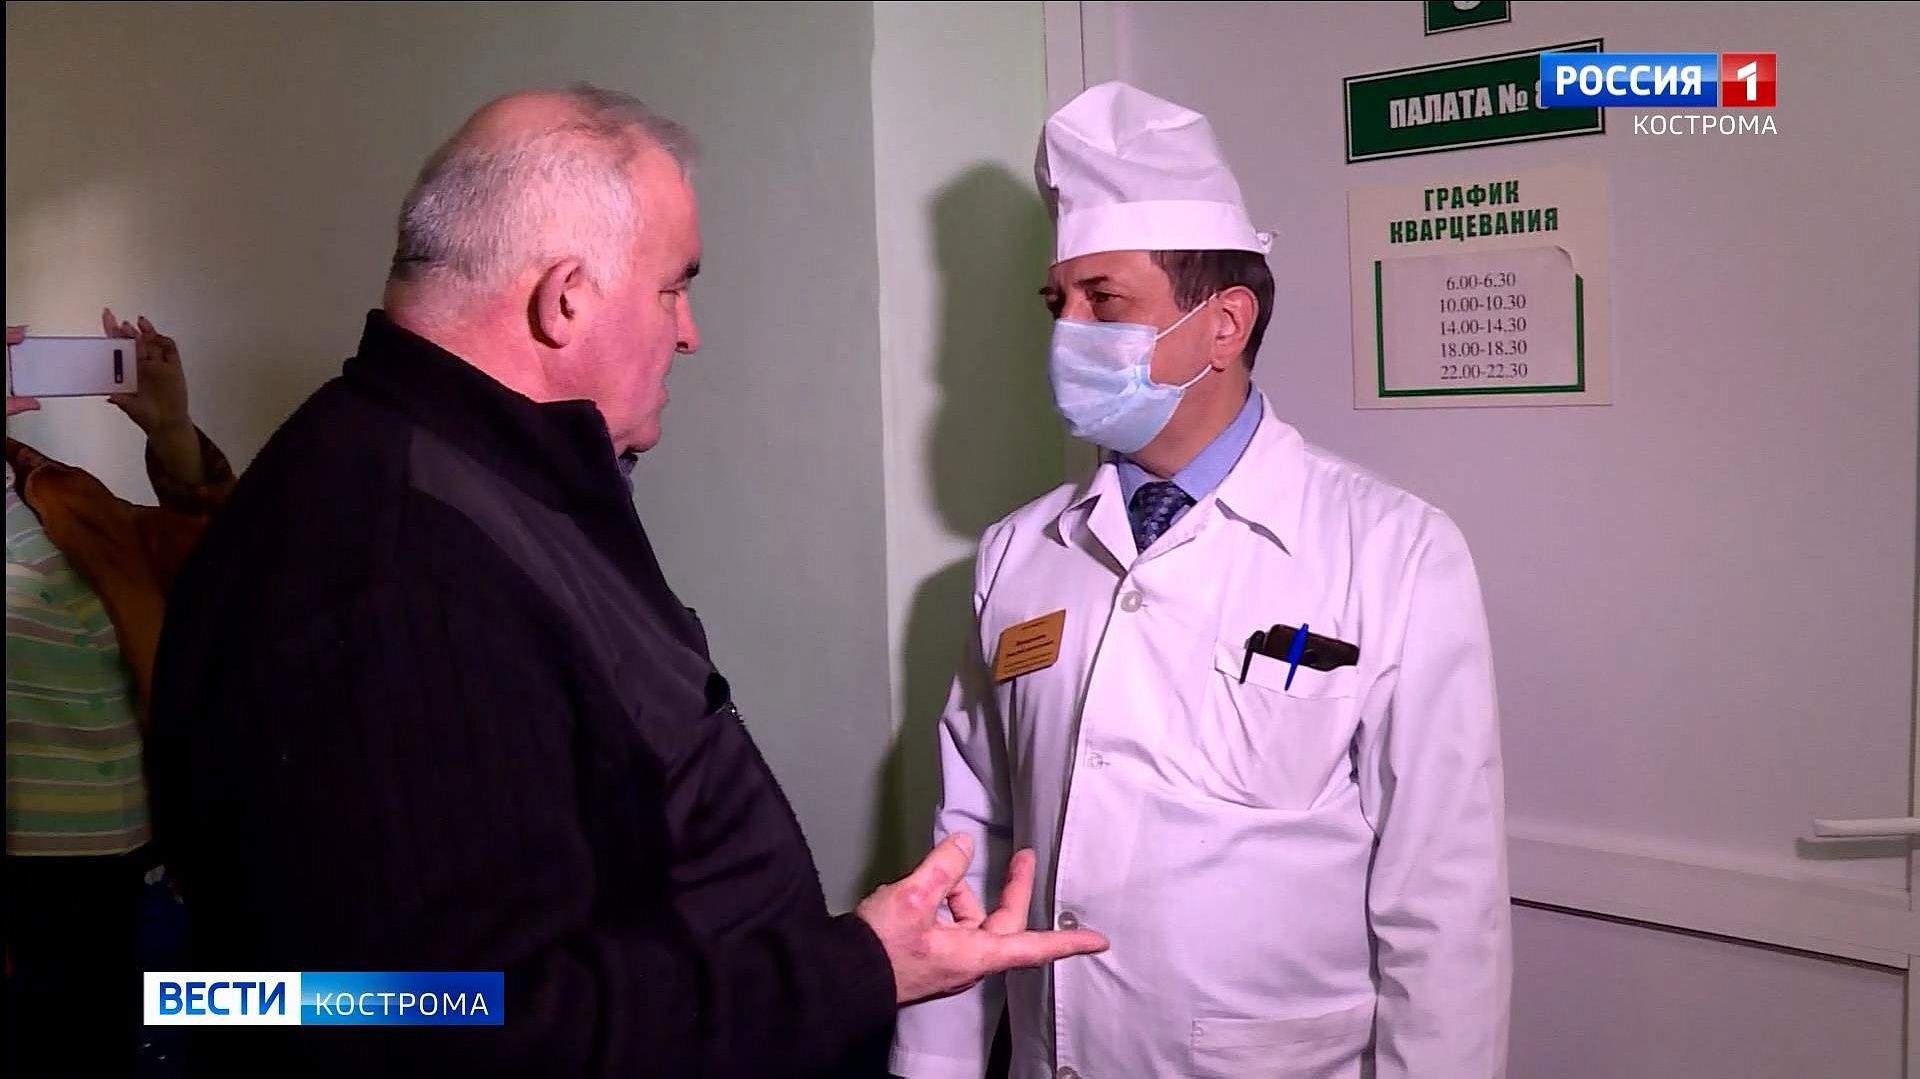 Сергей Ситников: костромские больницы готовы к приёму больных коронавирусом 